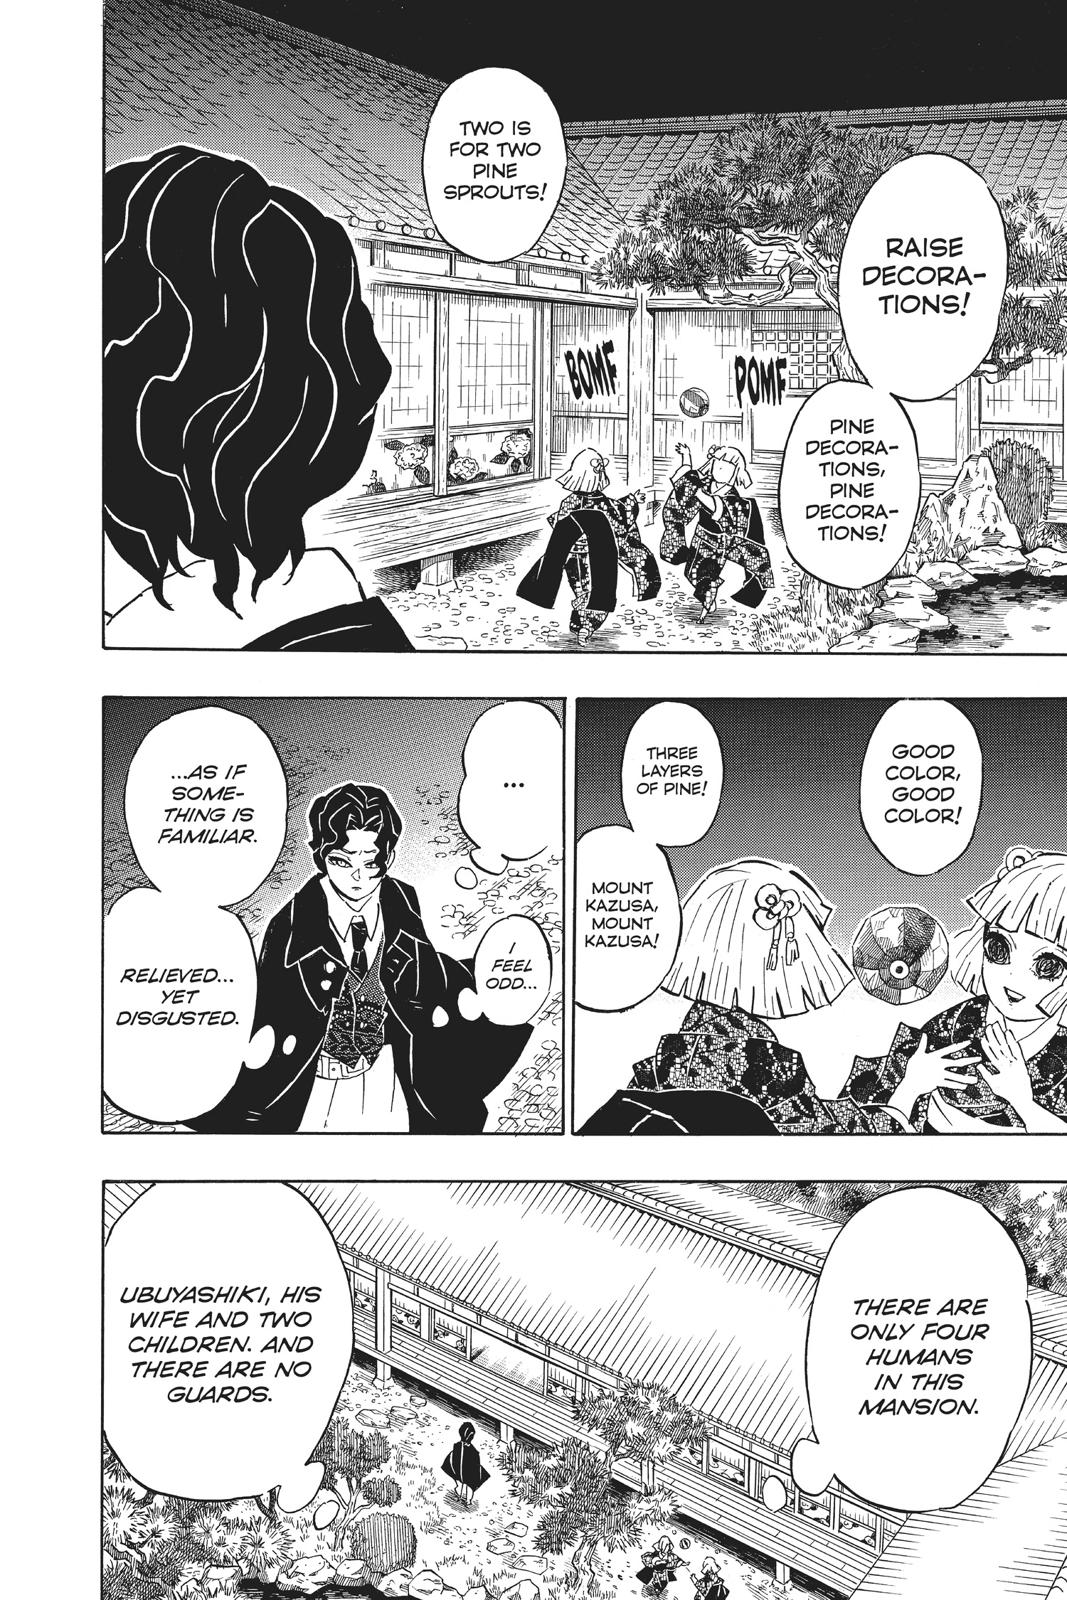 Demon Slayer Manga Manga Chapter - 137 - image 9